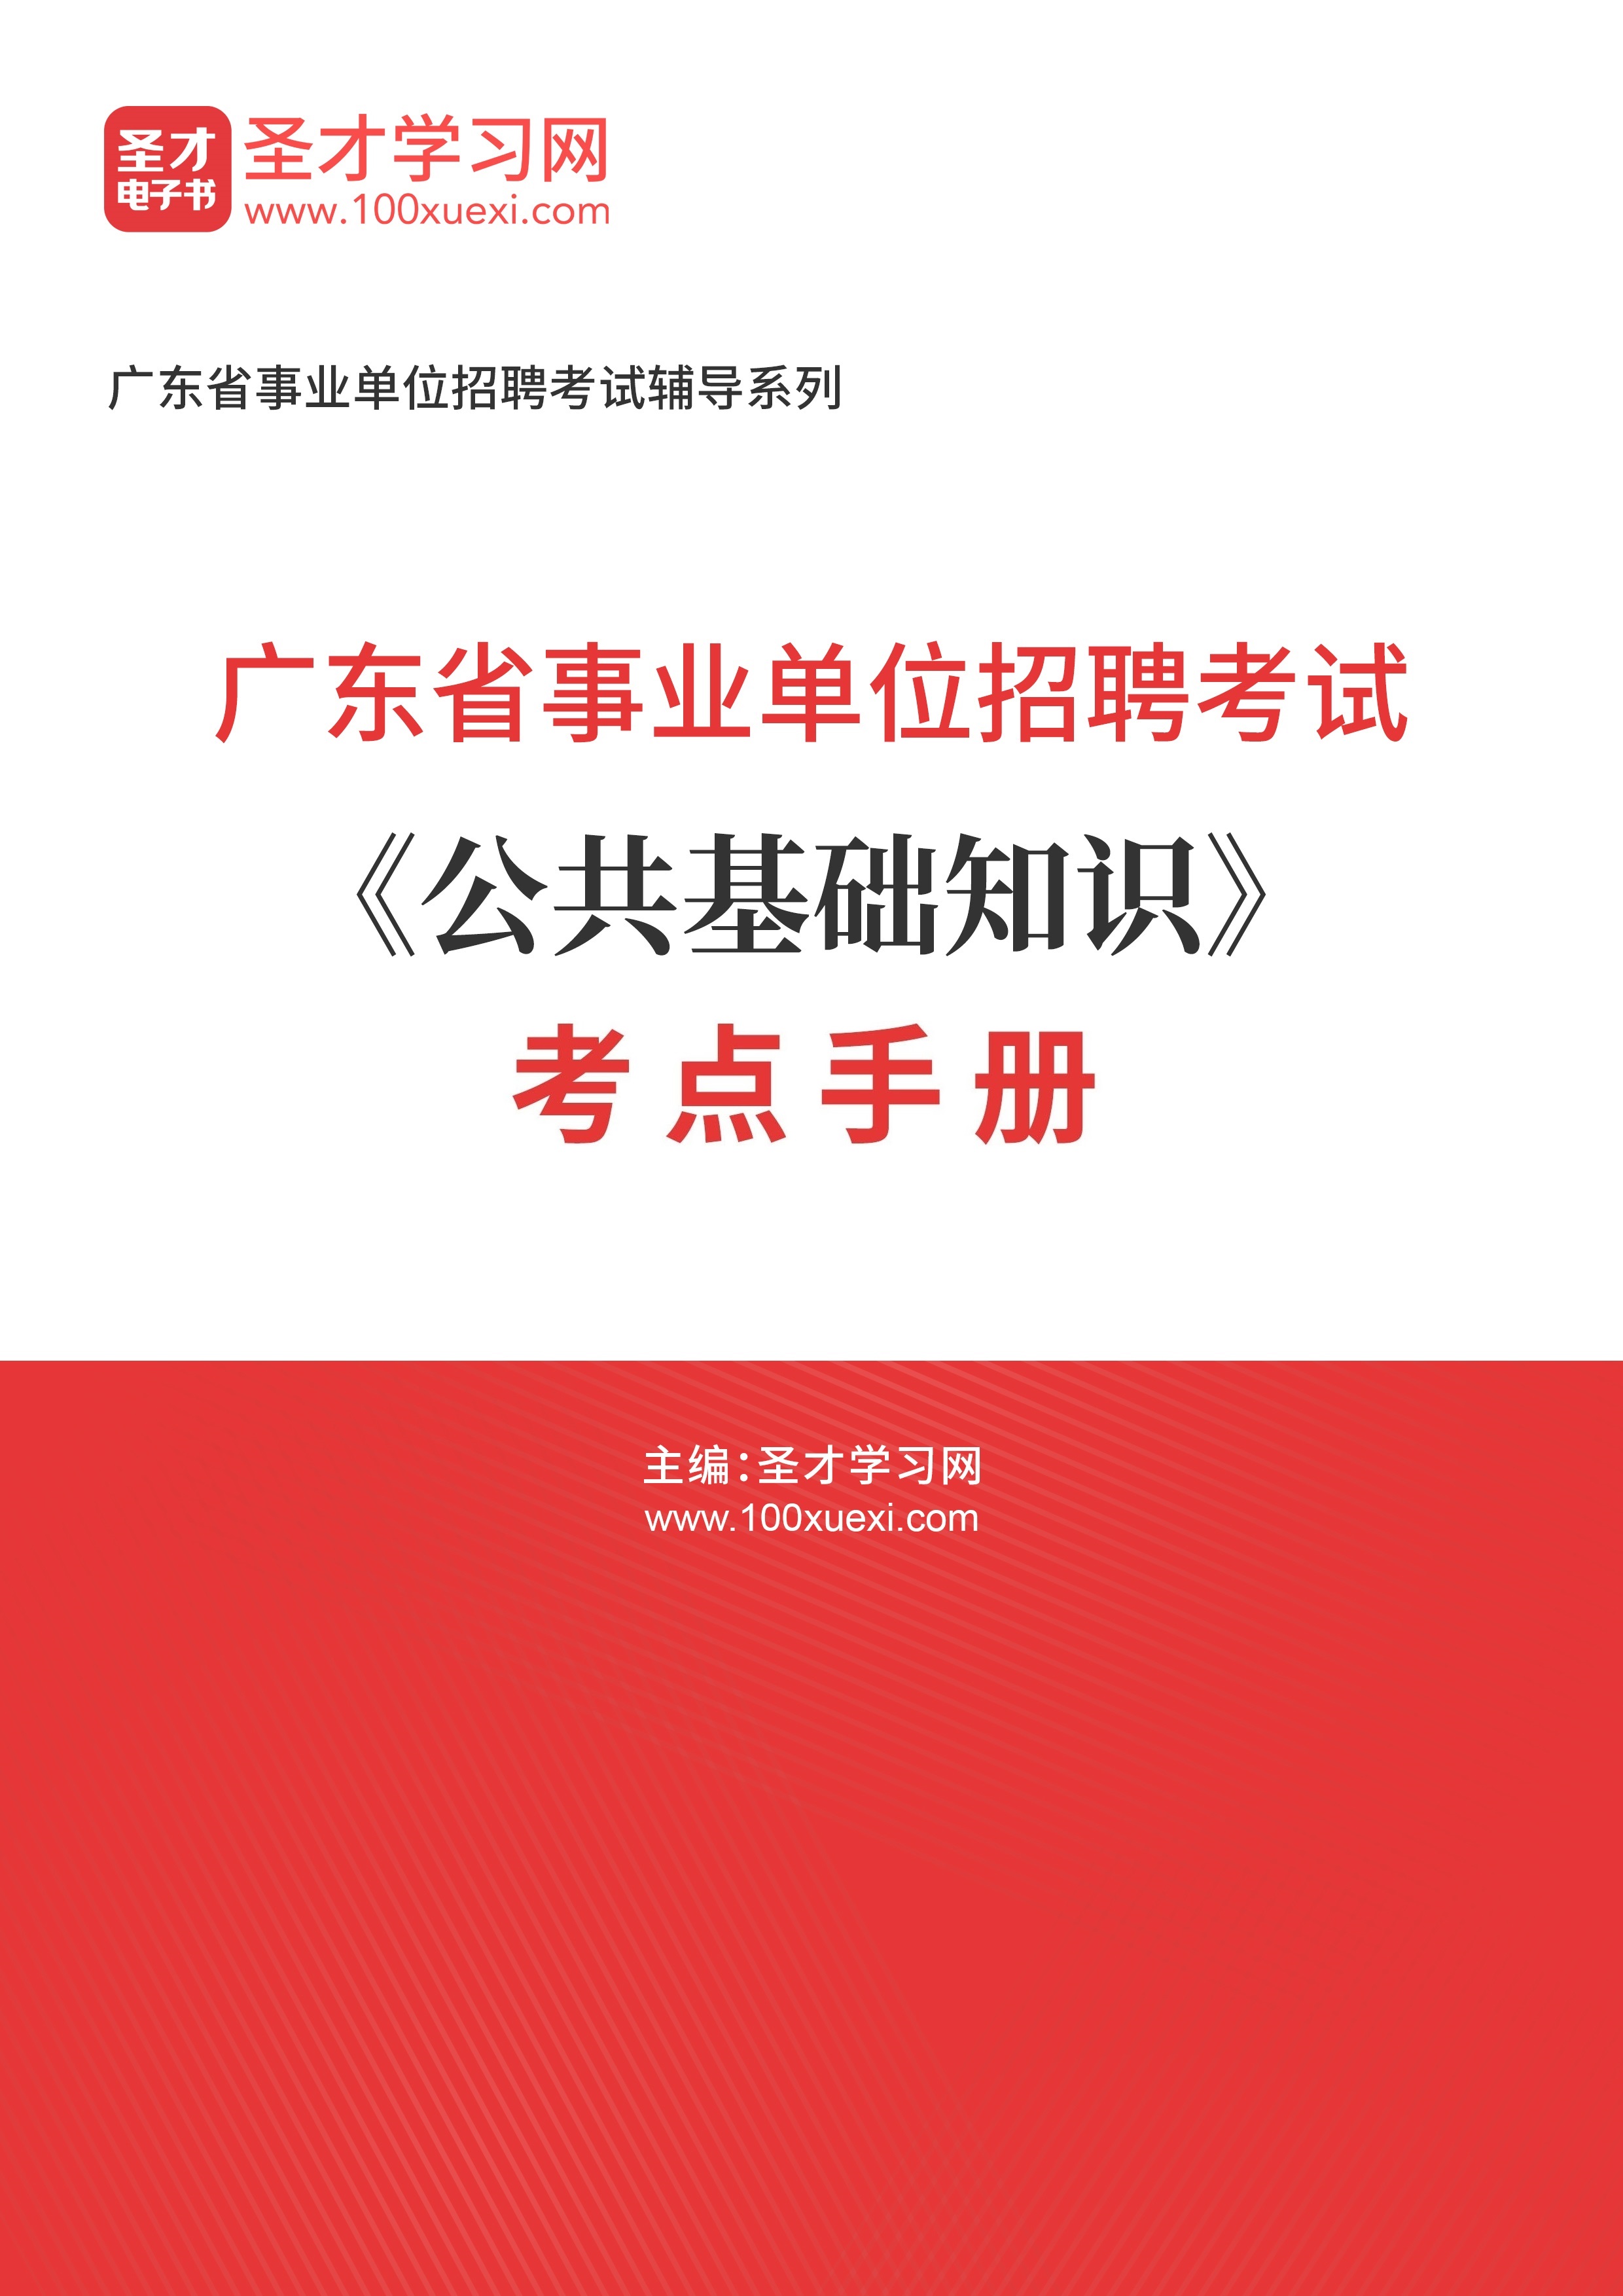 2024年广东省事业单位招聘考试《公共基础知识》考点手册